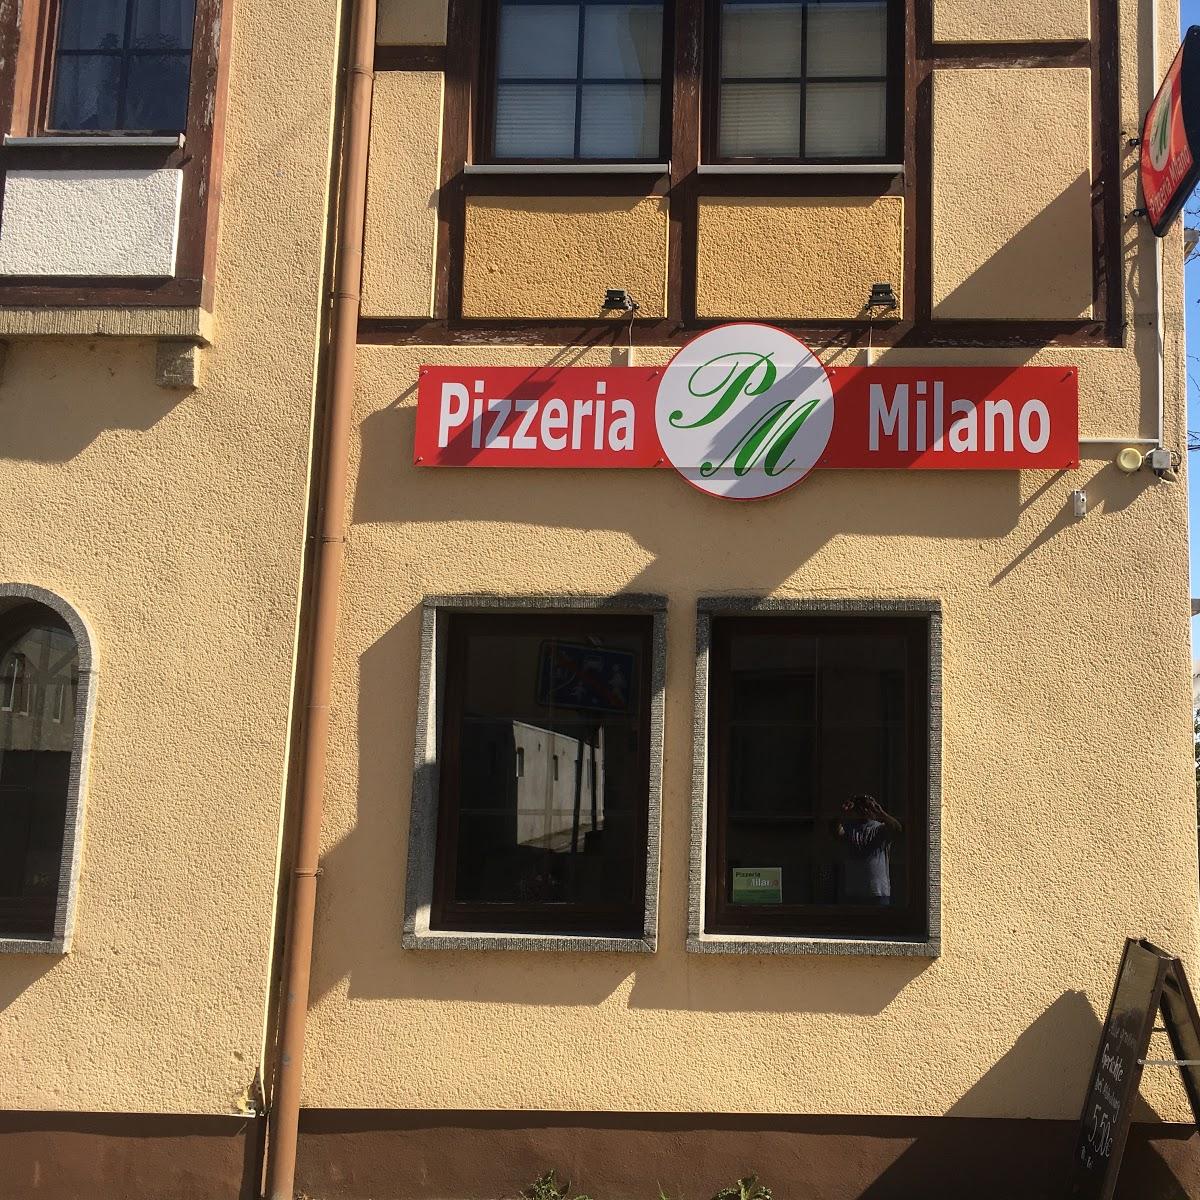 Restaurant "Pizzeria Milano Calbe" in Calbe (Saale)